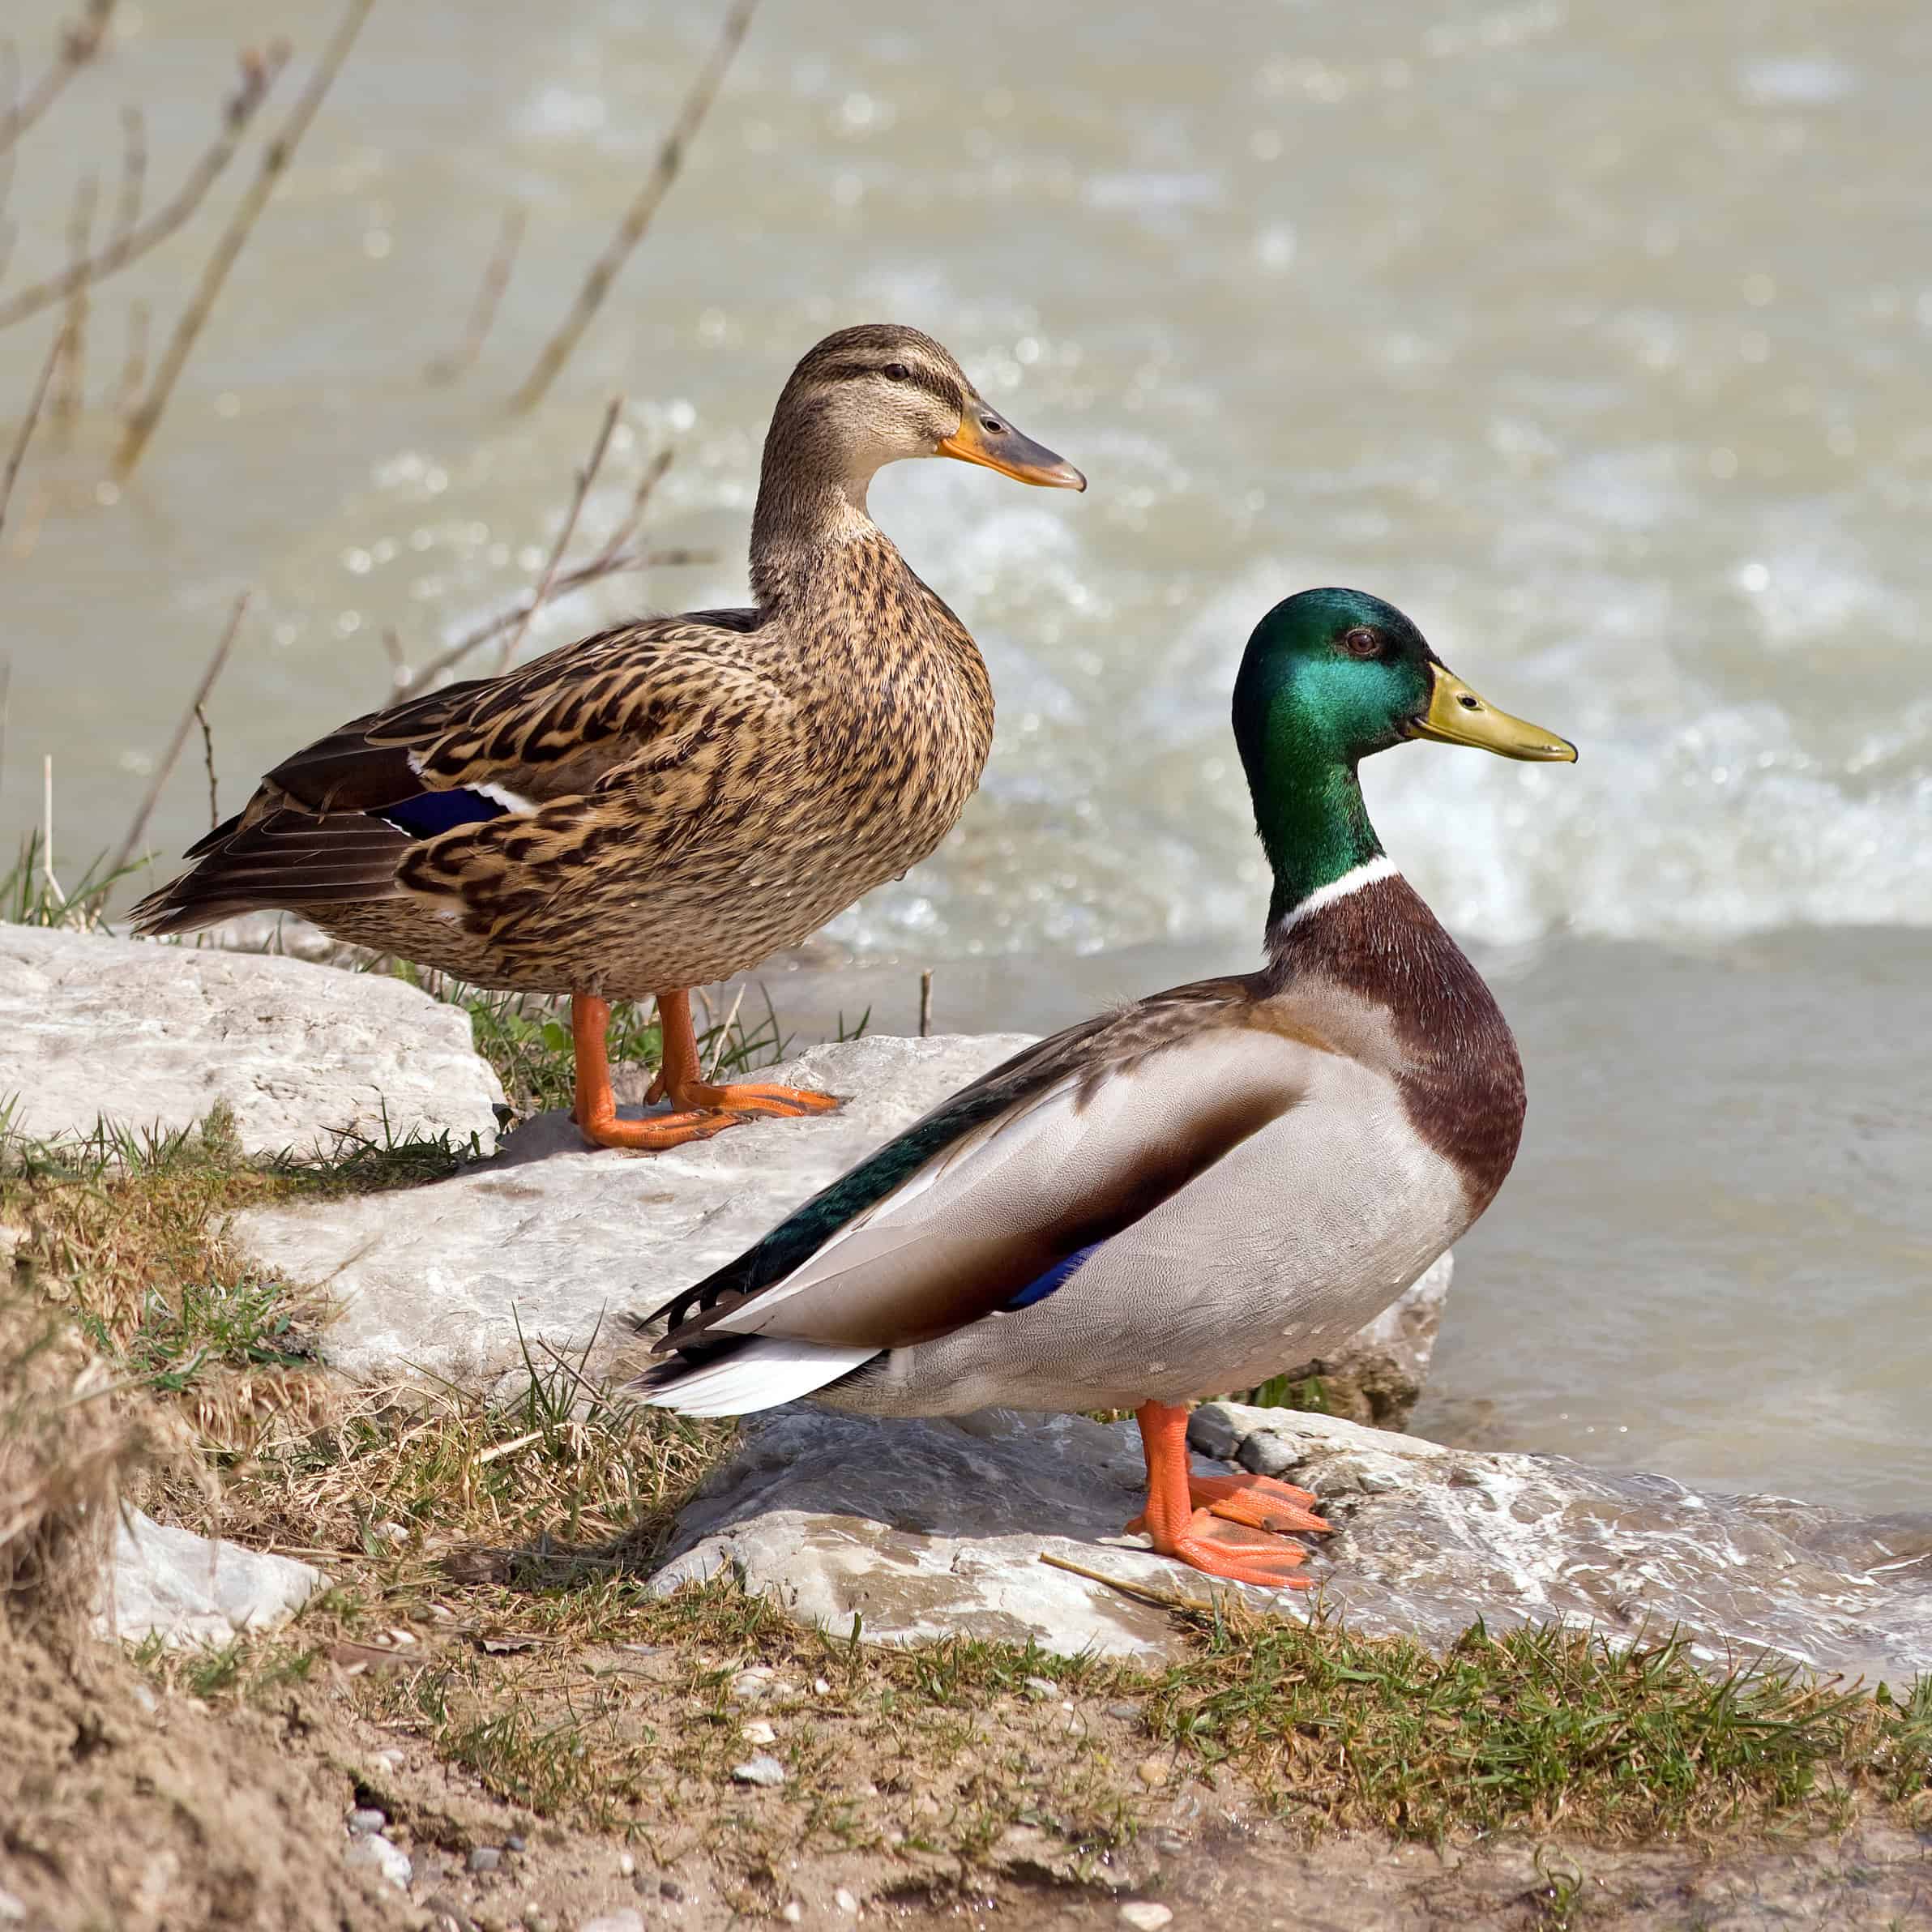 Male and female mallard ducks Anas platyrhynchos